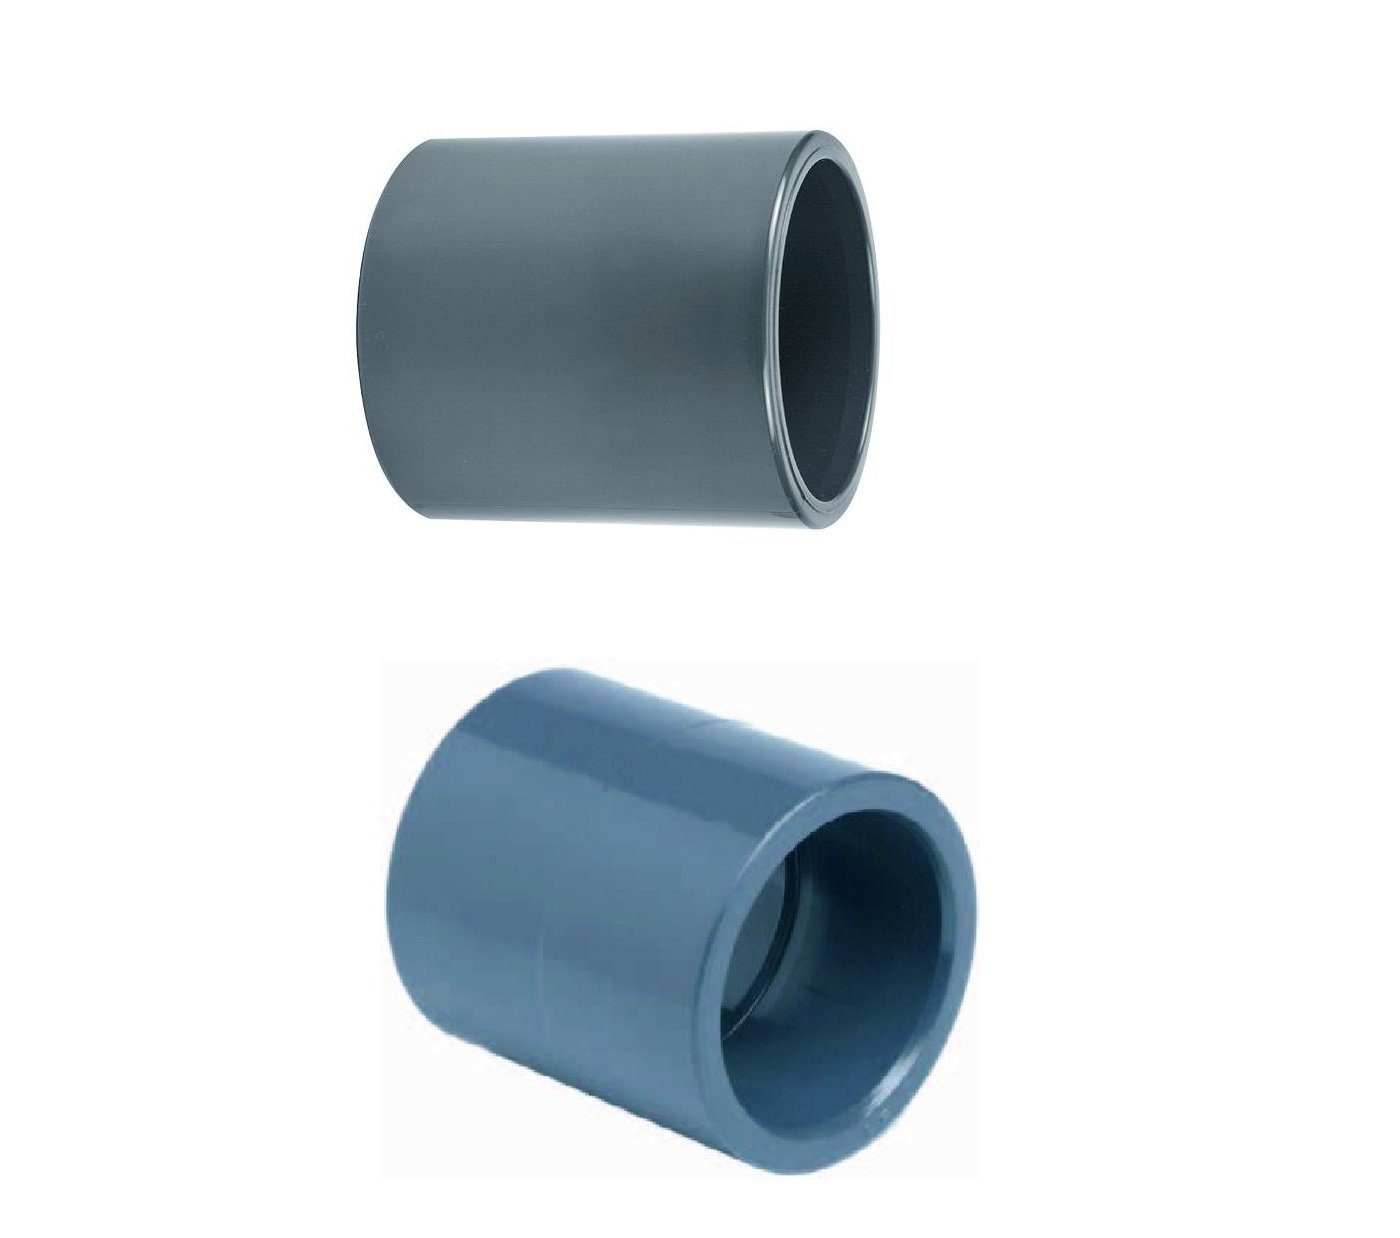 Cepex Wasserrohr Cepex PVC Muffe für 25 mm Rohrverbindungen beiseitige Klebemuffe